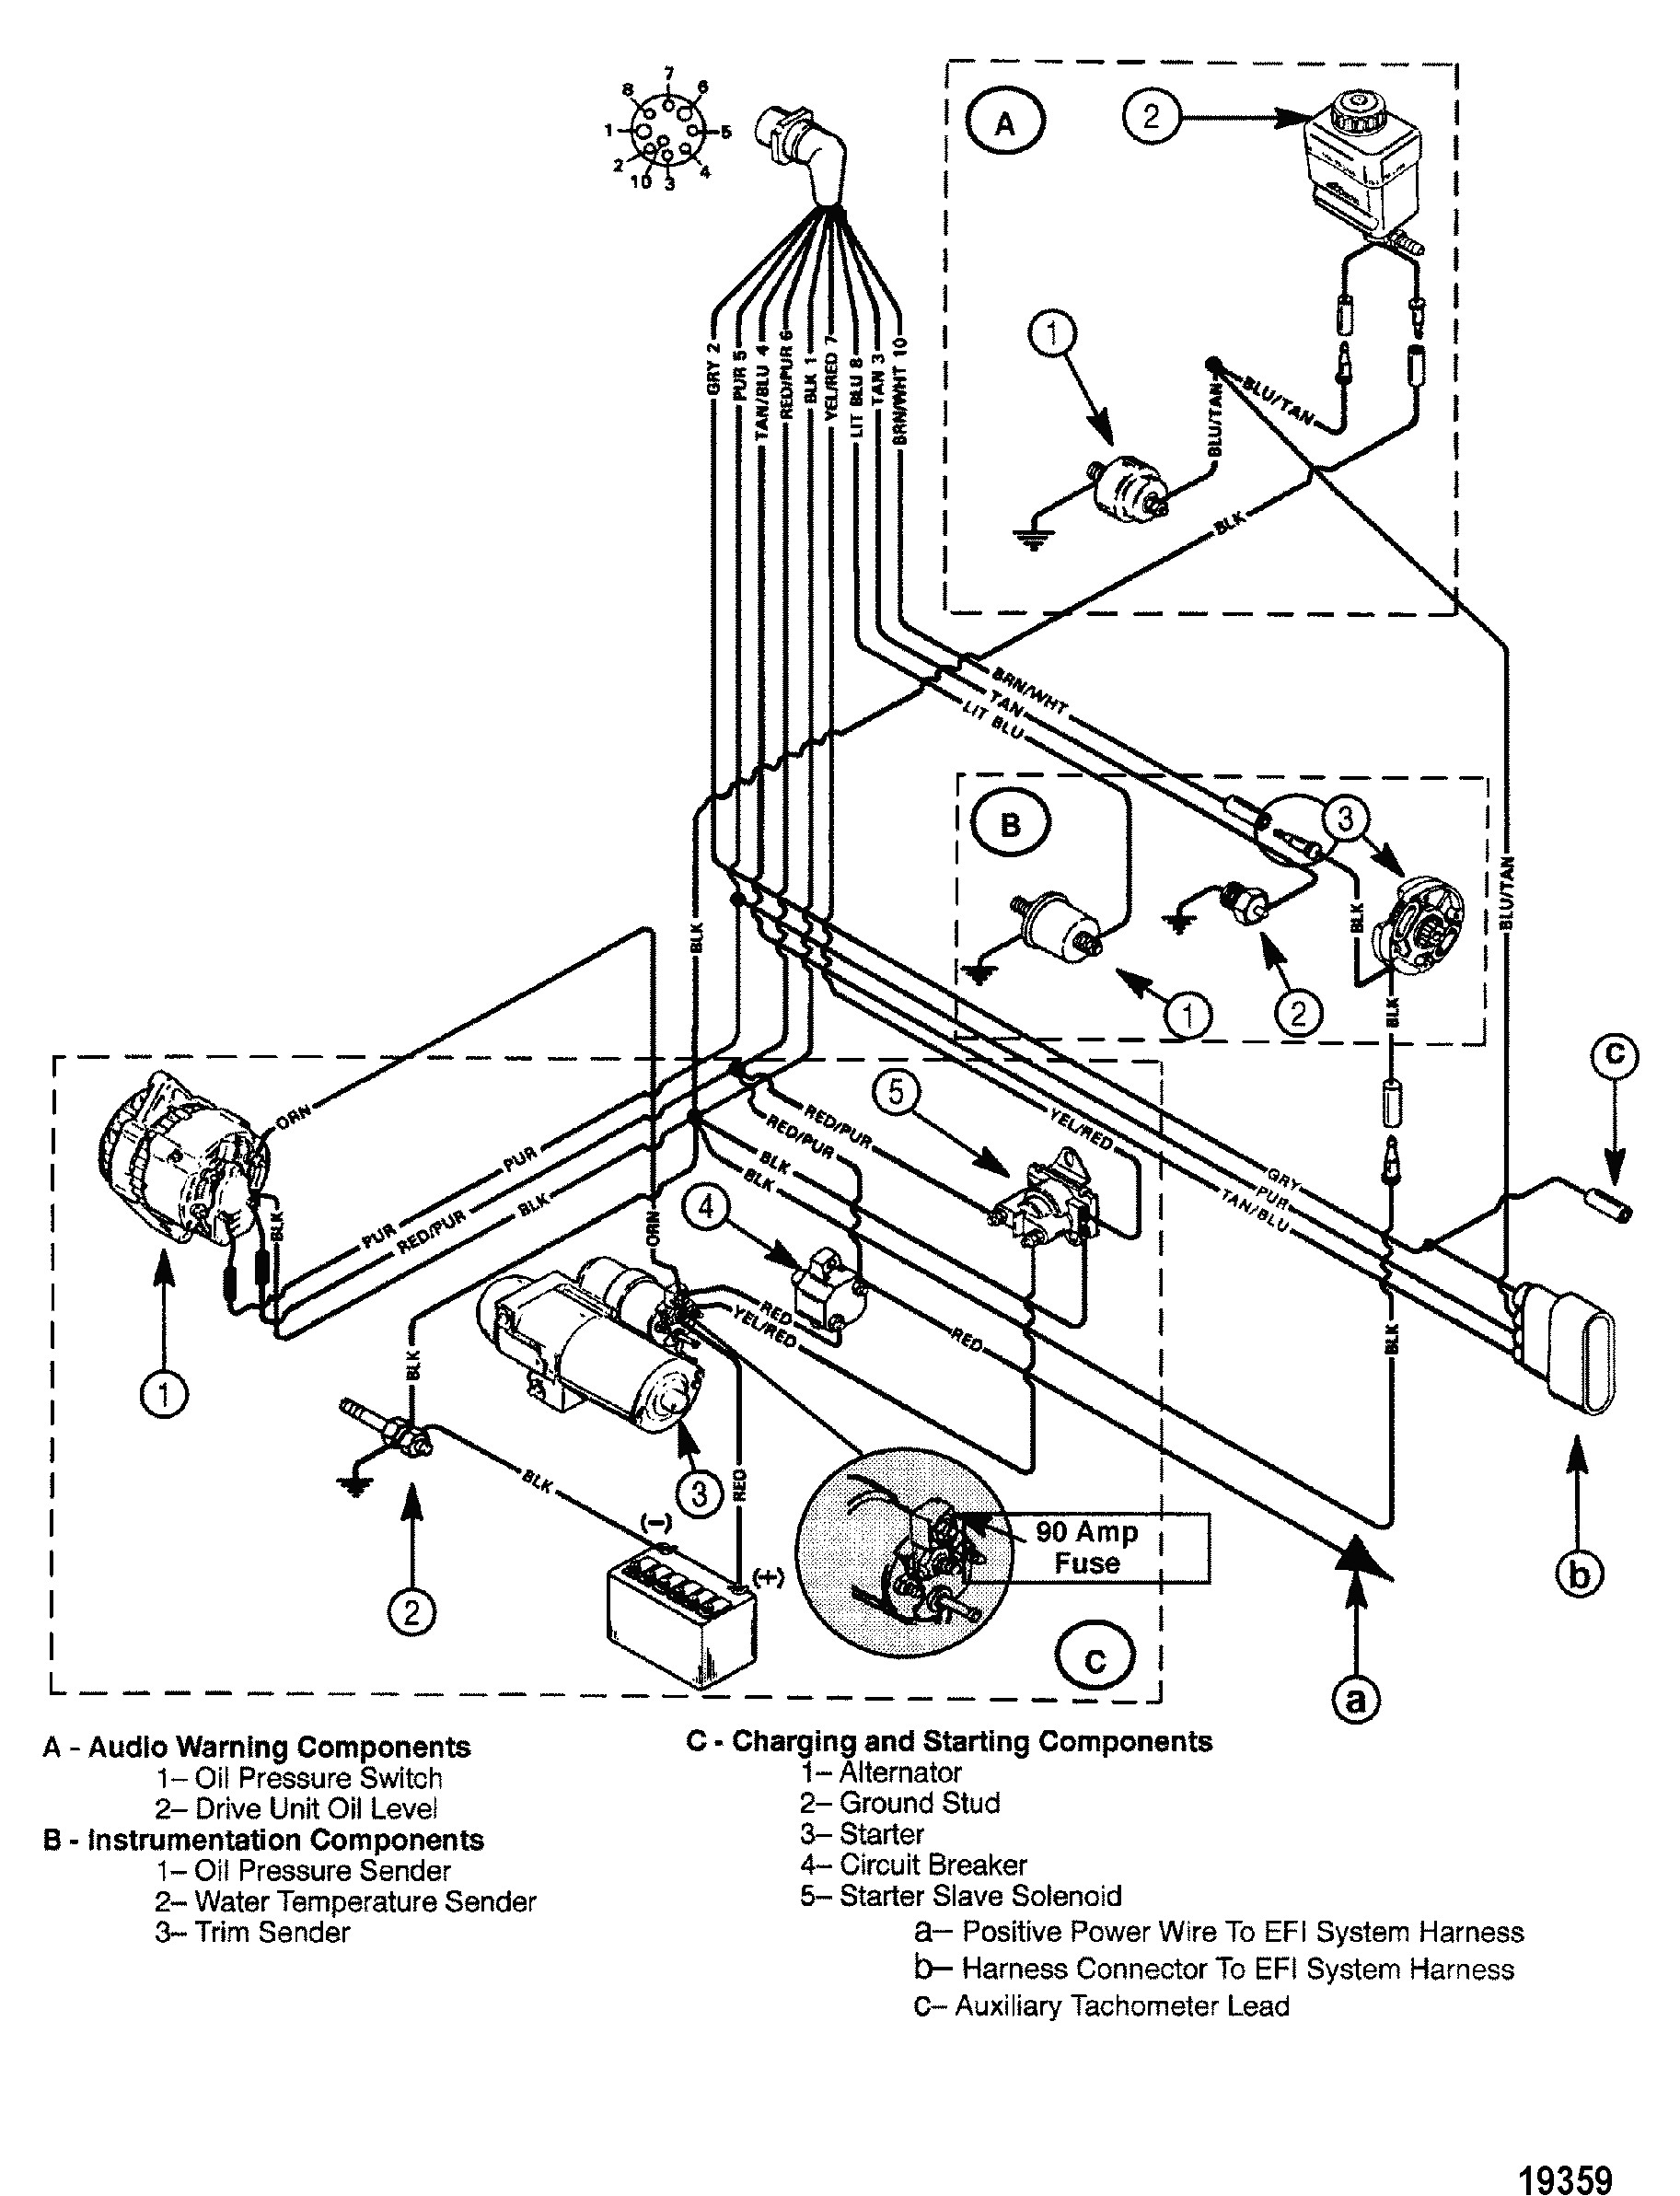 Mercruiser 4 3Lx Tachometer Wiring | Wiring Library - Mercruiser 4.3 Wiring Diagram